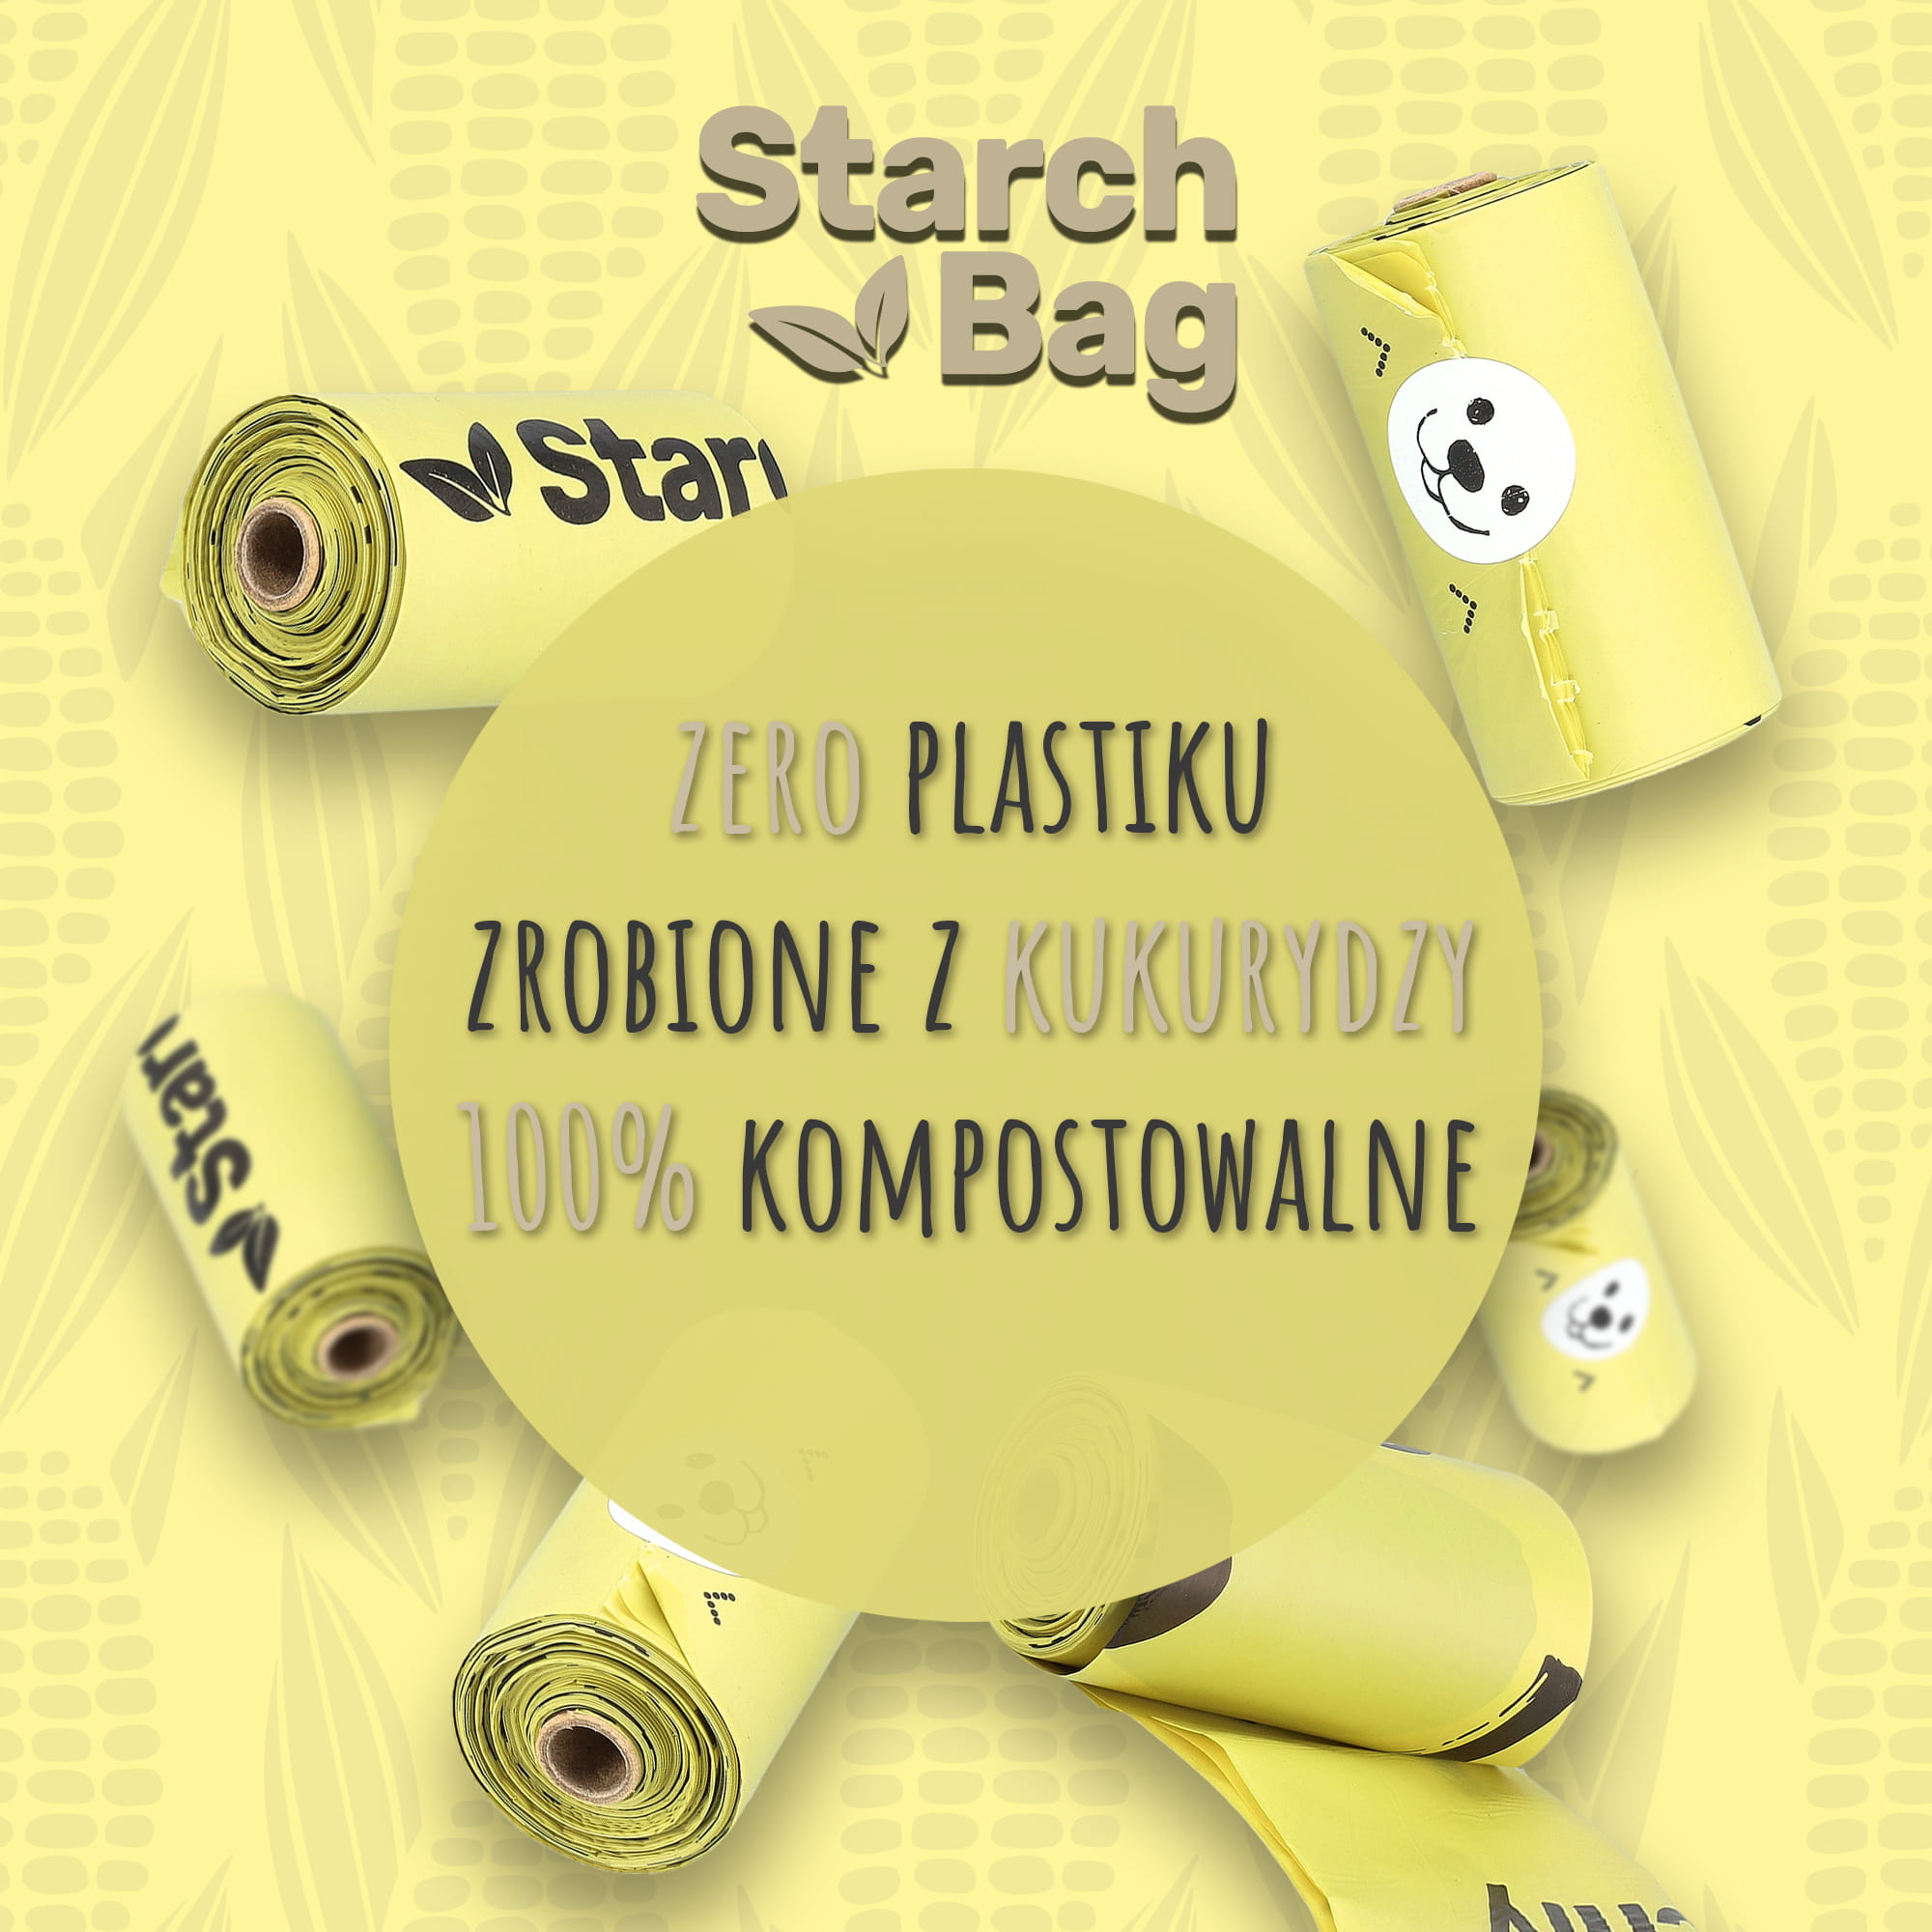 100% eco - friendly Poop bags - StarchBag image 2